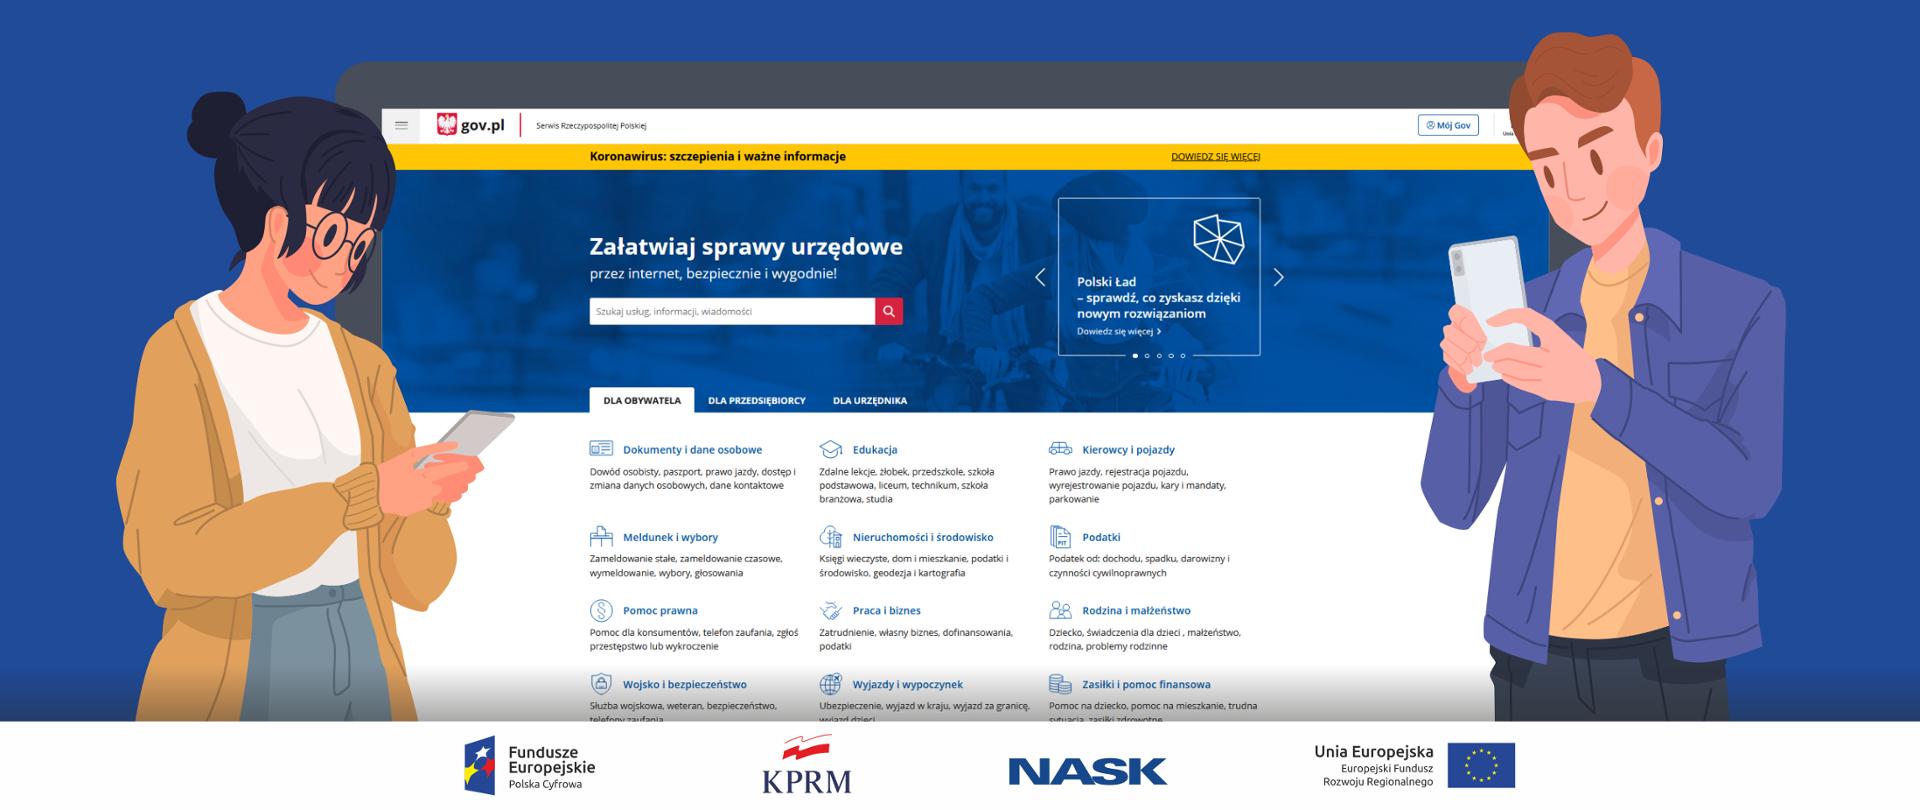 Kolorowa grafika wektorowa. Na głównym planie strona gov.pl, po bokach kobieta (z lewej strony) i mężczyzna (z prawej) z telefonami komórkowymi.